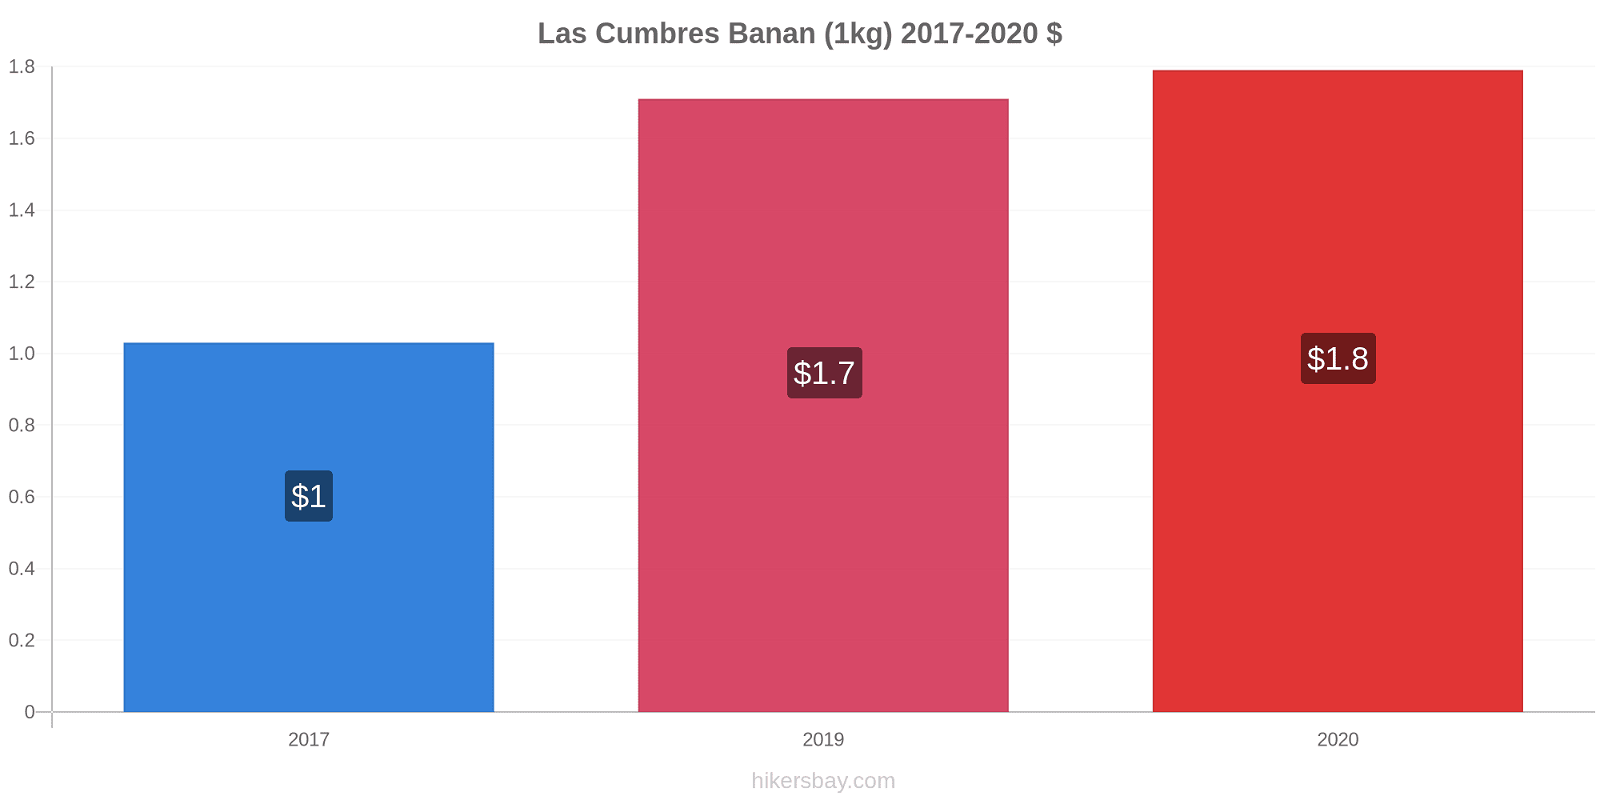 Las Cumbres prisförändringar Banan (1kg) hikersbay.com